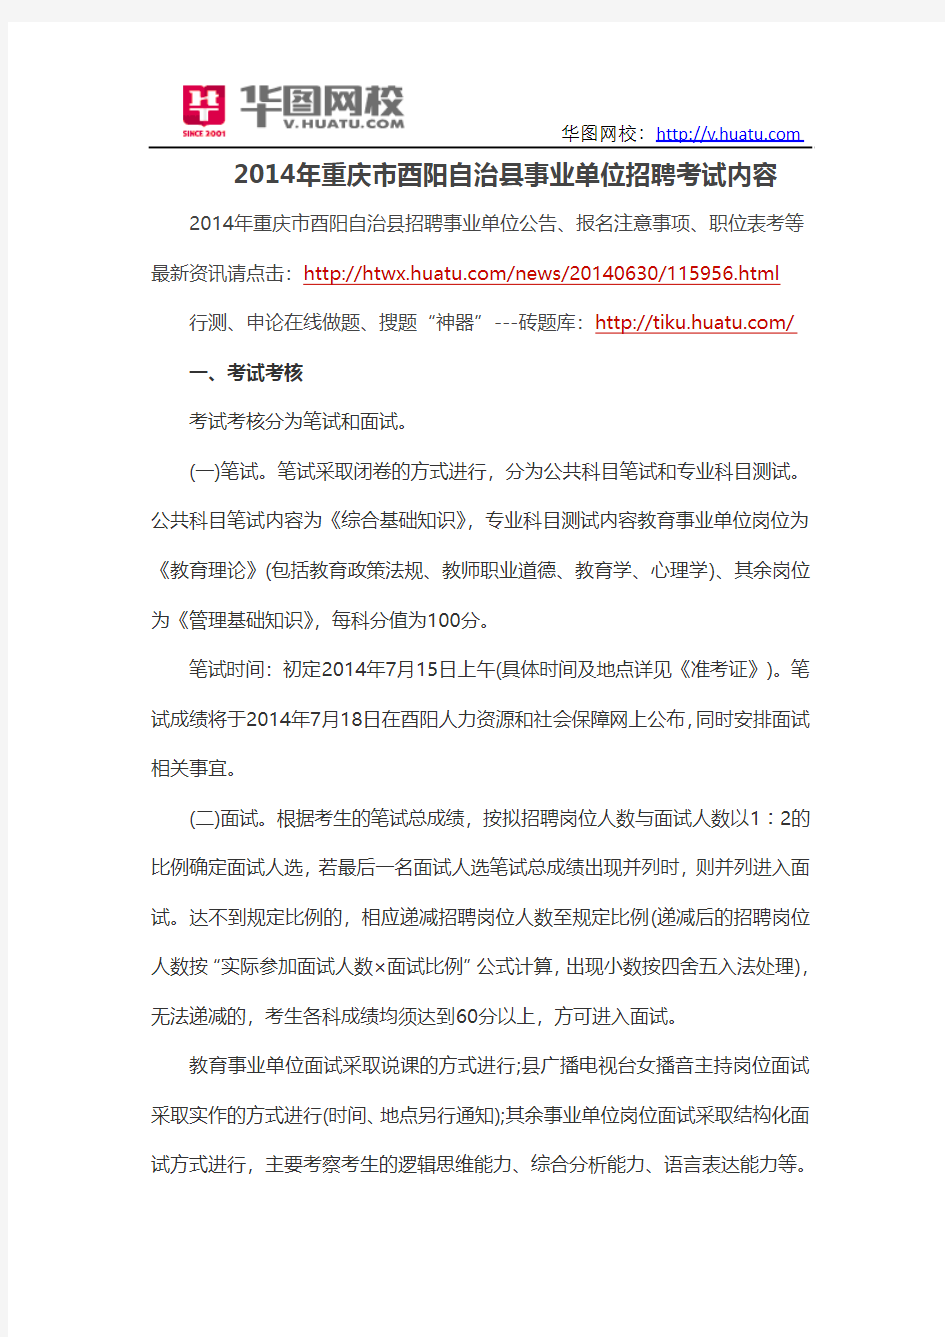 2014年重庆市酉阳自治县事业单位招聘考试内容